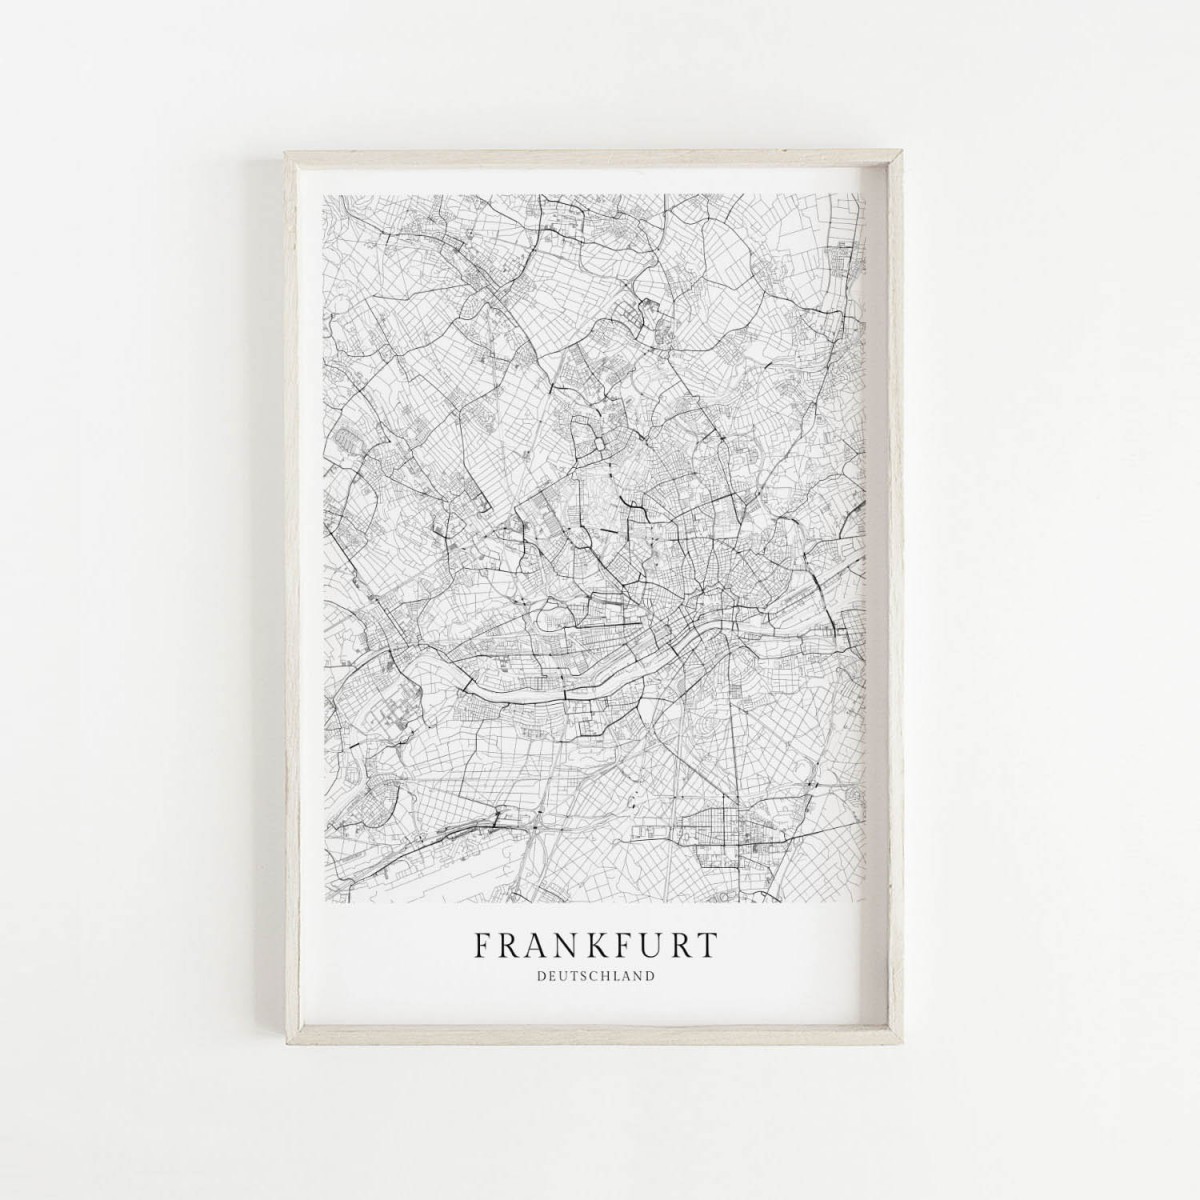 FRANKFURT als hochwertiges Poster im skandinavischen Stil von Skanemarie +++ Geschenkidee